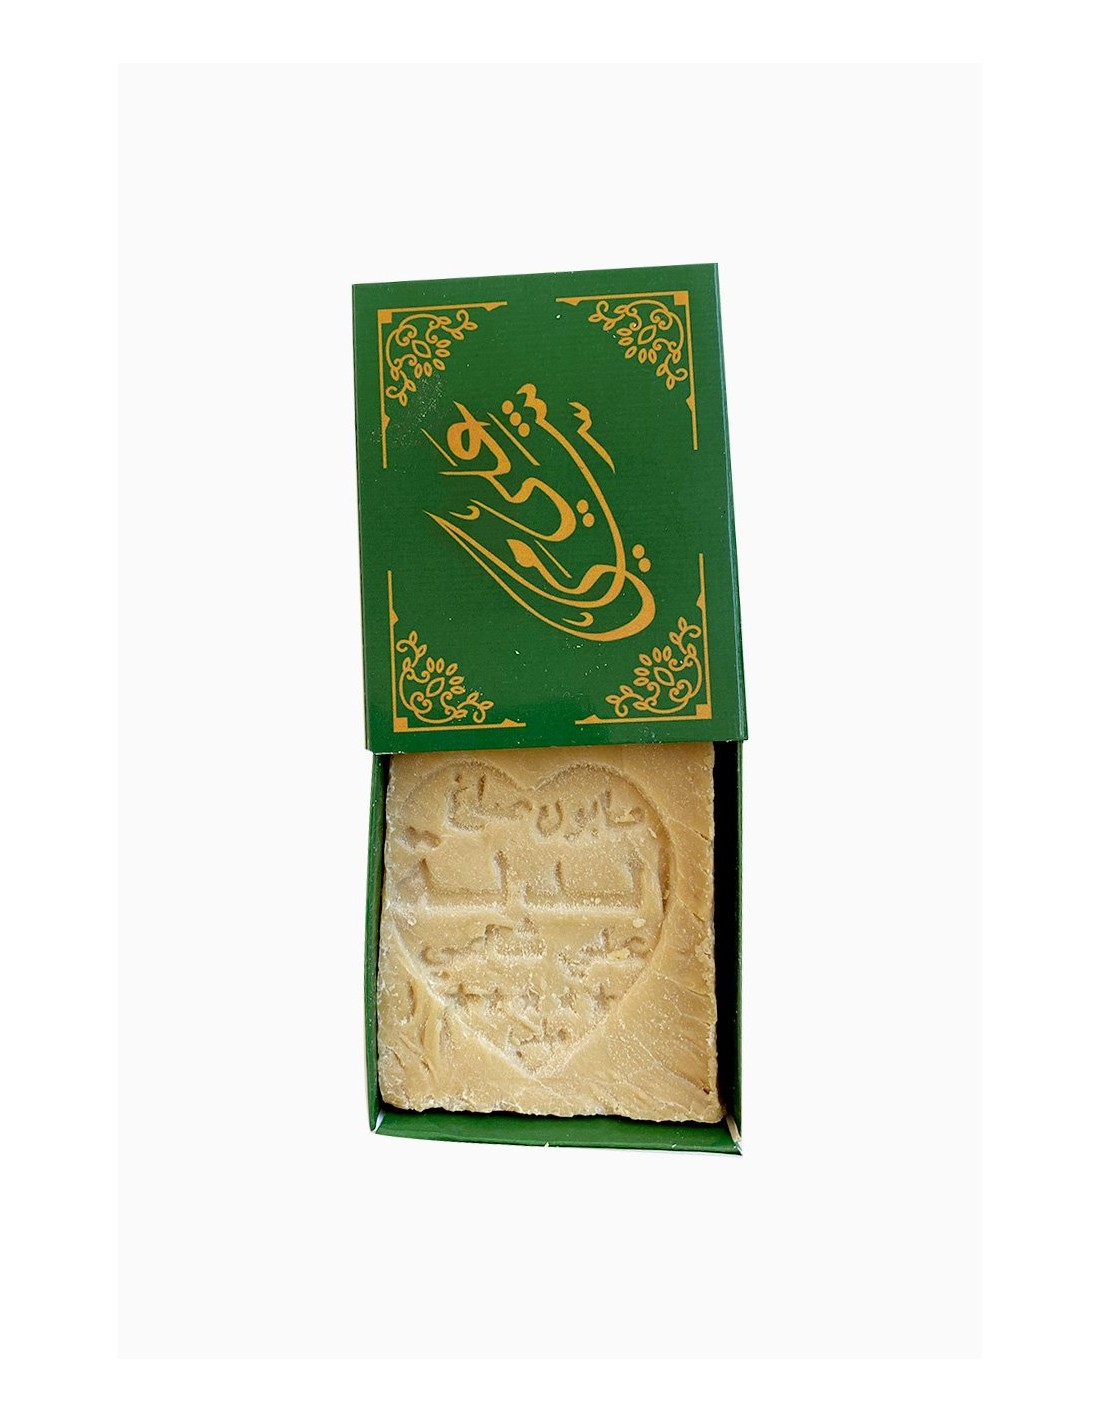 100% natural Aleppo soap